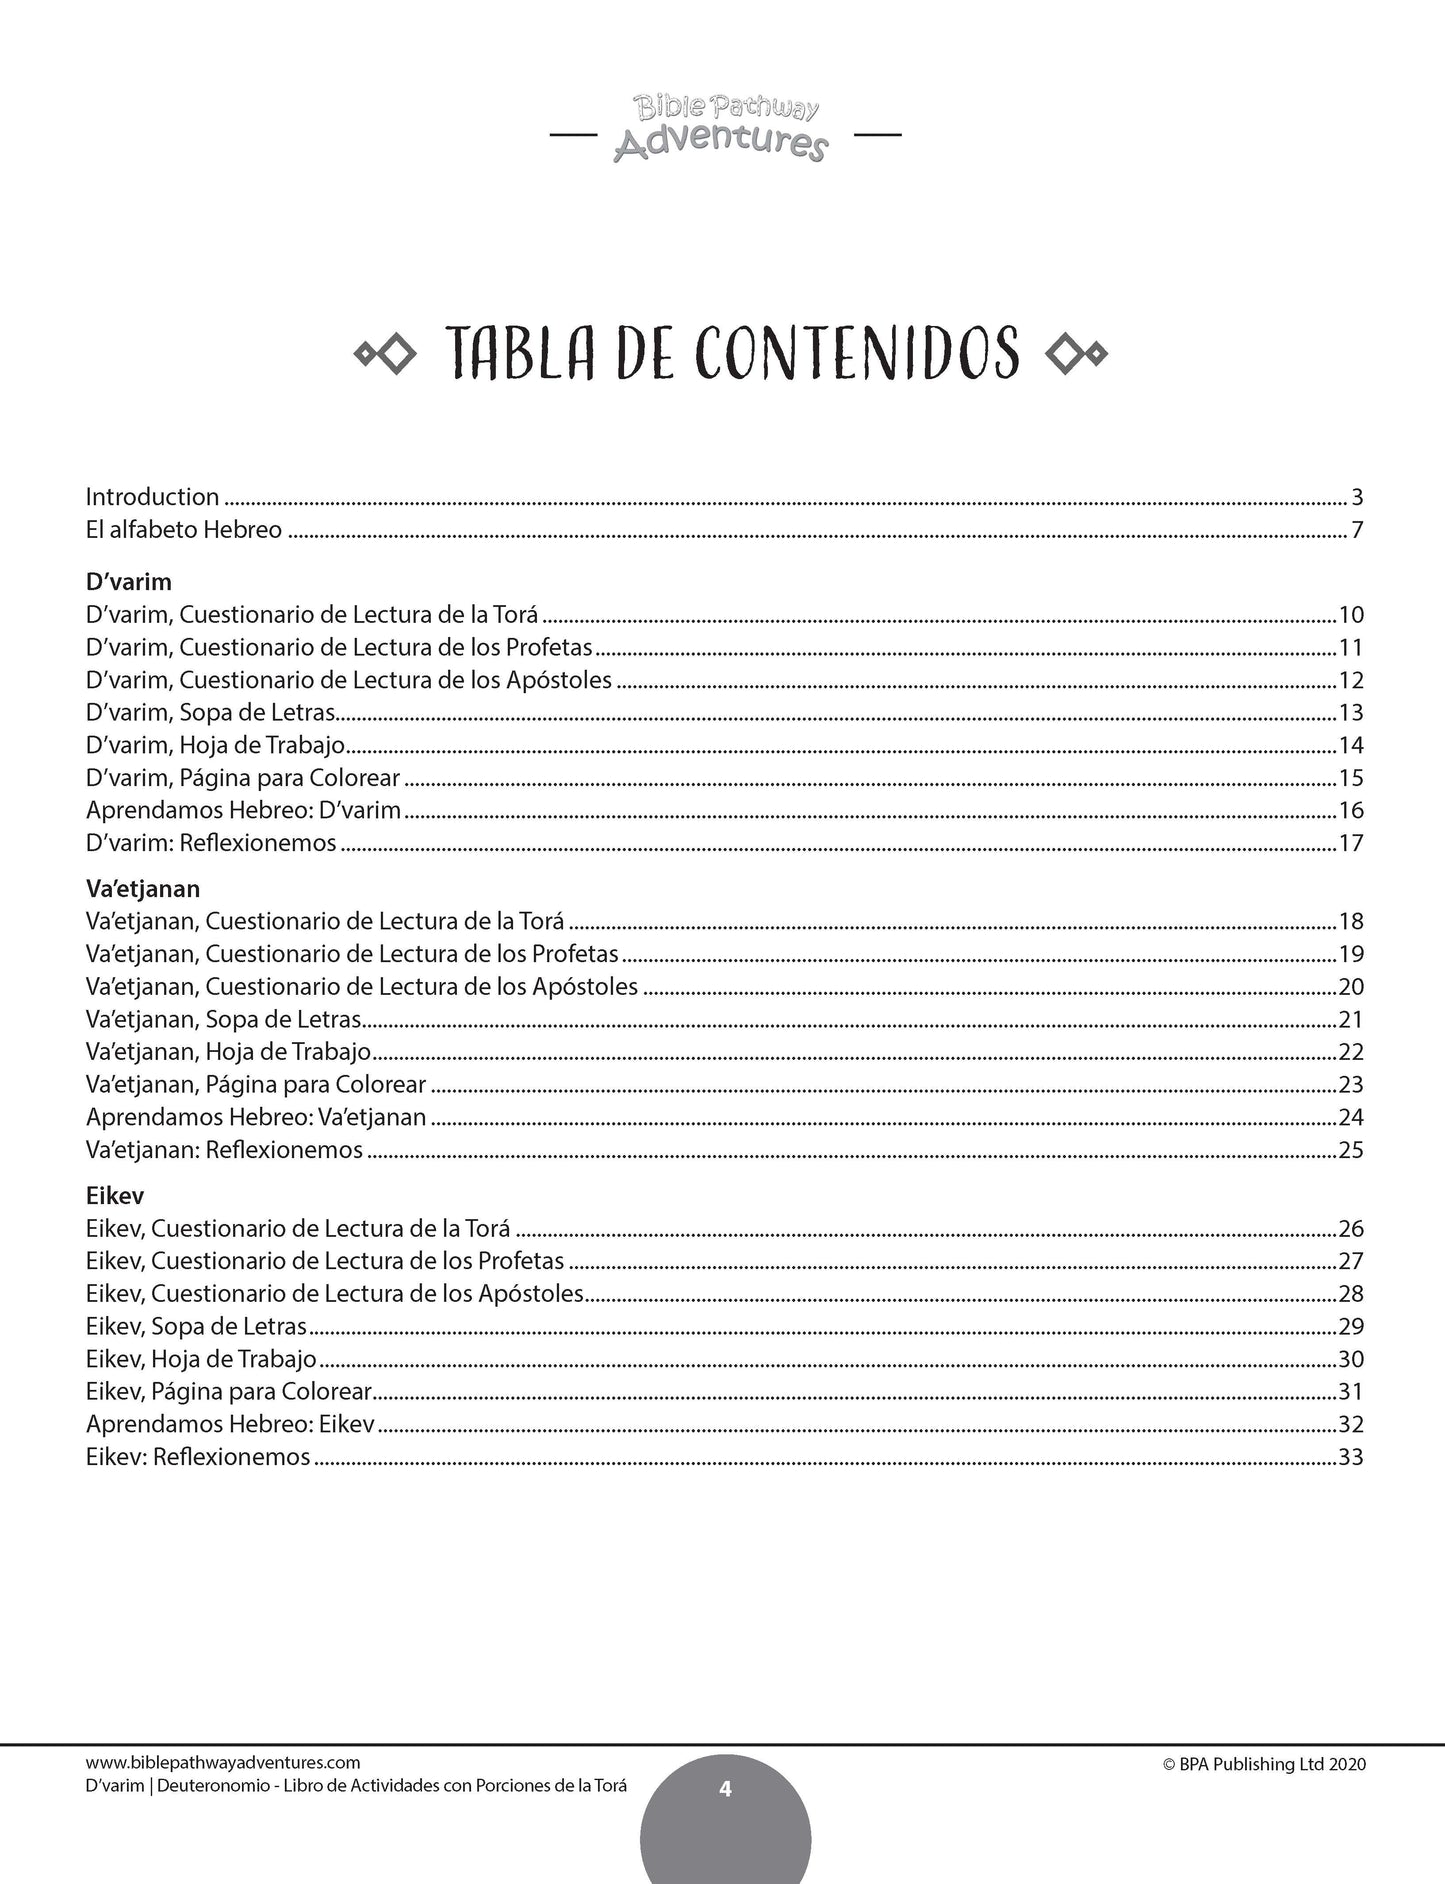 D’varim / Deuteronomio: Libro de actividades con porciones de la Torá (paperback)